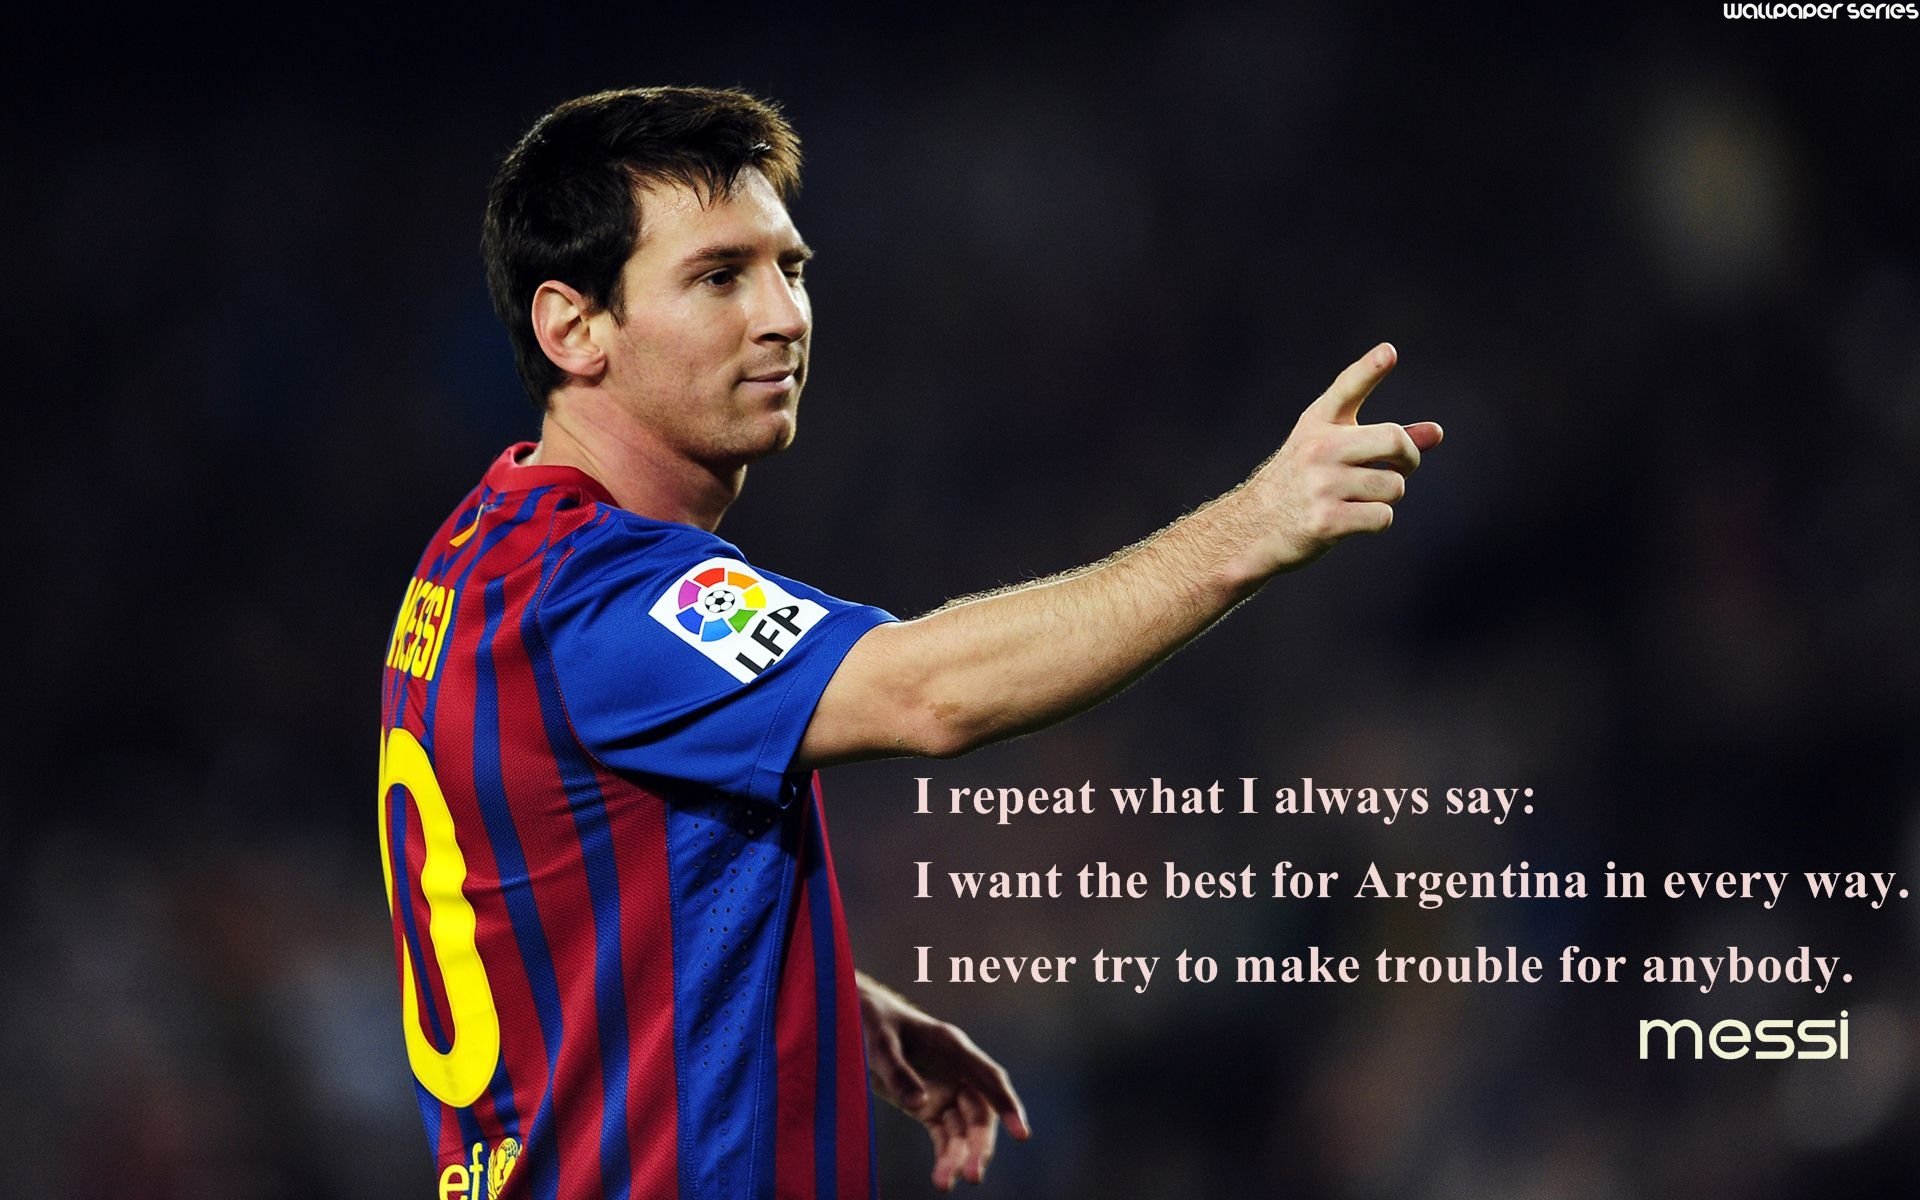 Messi quotes: Messi là một trong những cầu thủ xuất sắc nhất thế giới từng biết đến. Và các câu trích dẫn của anh ta không chỉ đơn thuần là những dòng chữ, mà còn mang giá trị sâu sắc về sự cống hiến, bản lĩnh và tinh thần chiến thắng. Hãy để những lời của Messi thôi thúc bạn đạt được những điều tốt đẹp nhất trong cuộc sống và sự nghiệp của mình.